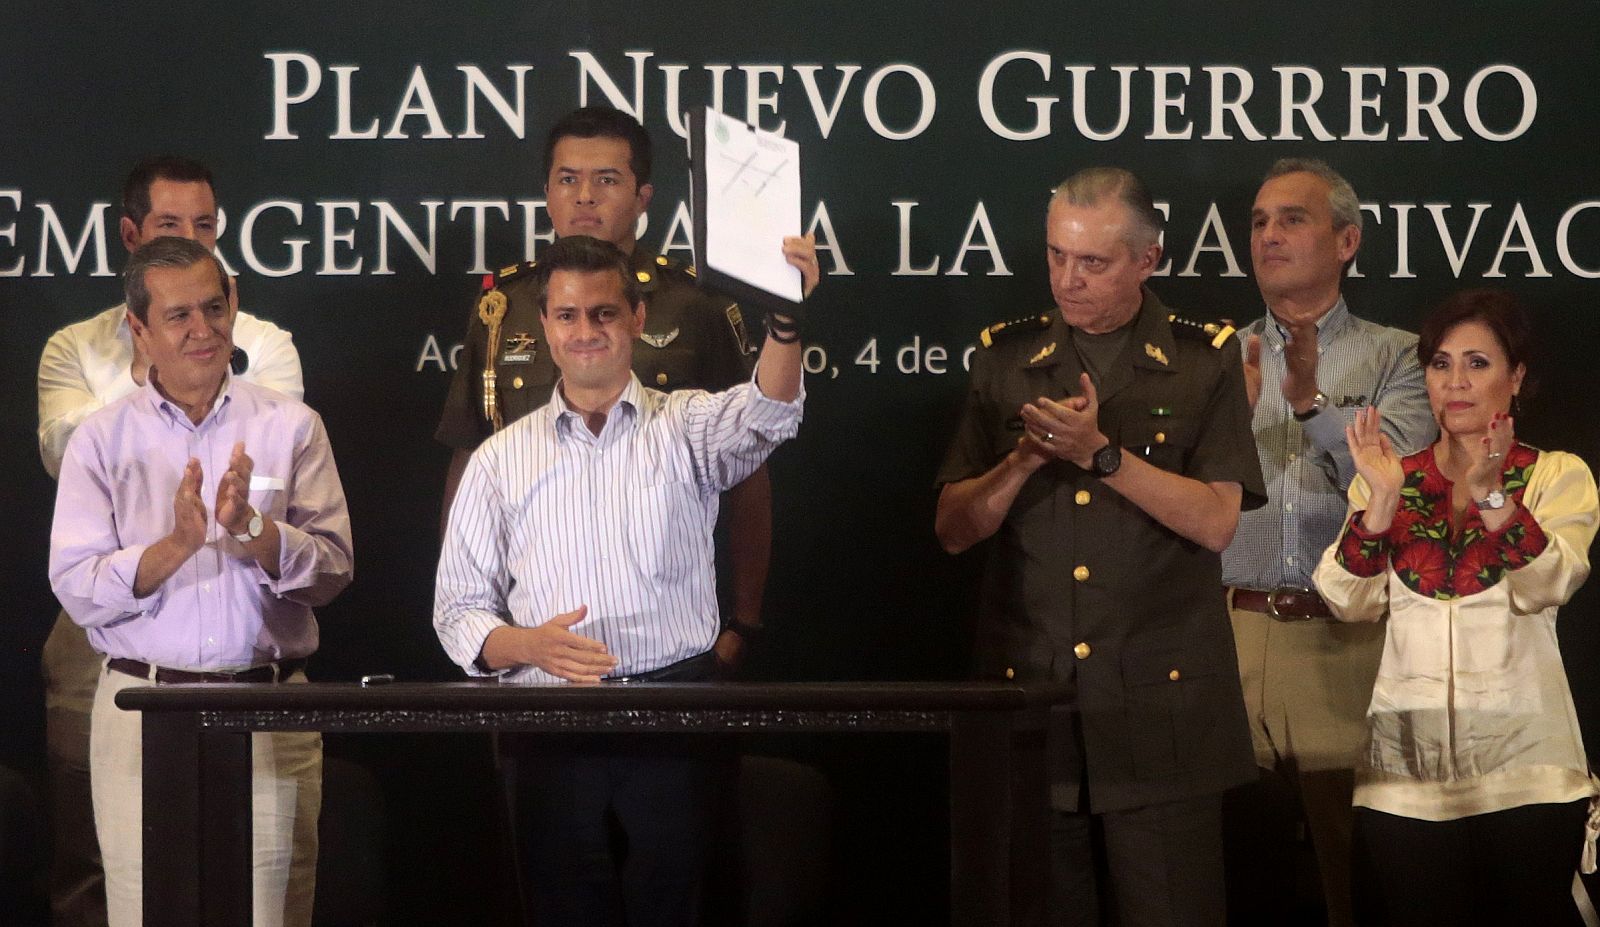 El presidente mexicano, Enrique Peña Nieto, muestra el documento del plan para un "Nuevo Gierrero" en su visita a Acapulco.